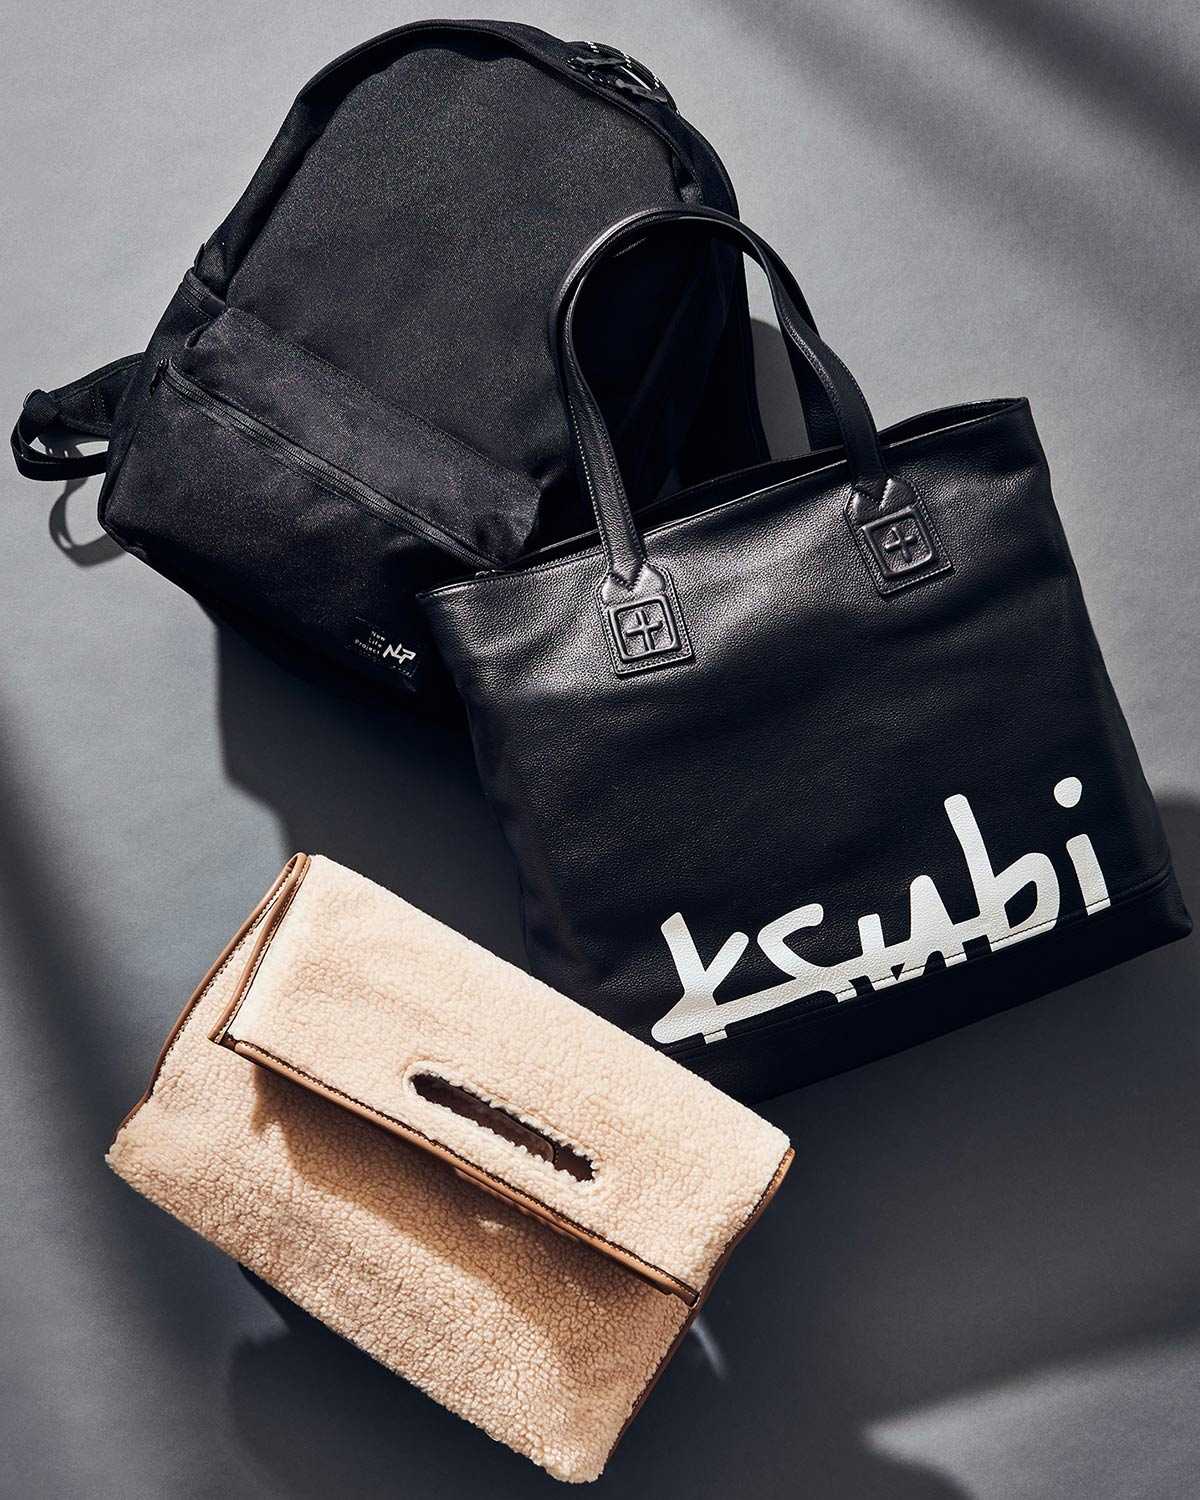 シーン別でバッグを使い分けるのが、お洒落上手！ | Fashion | Safari